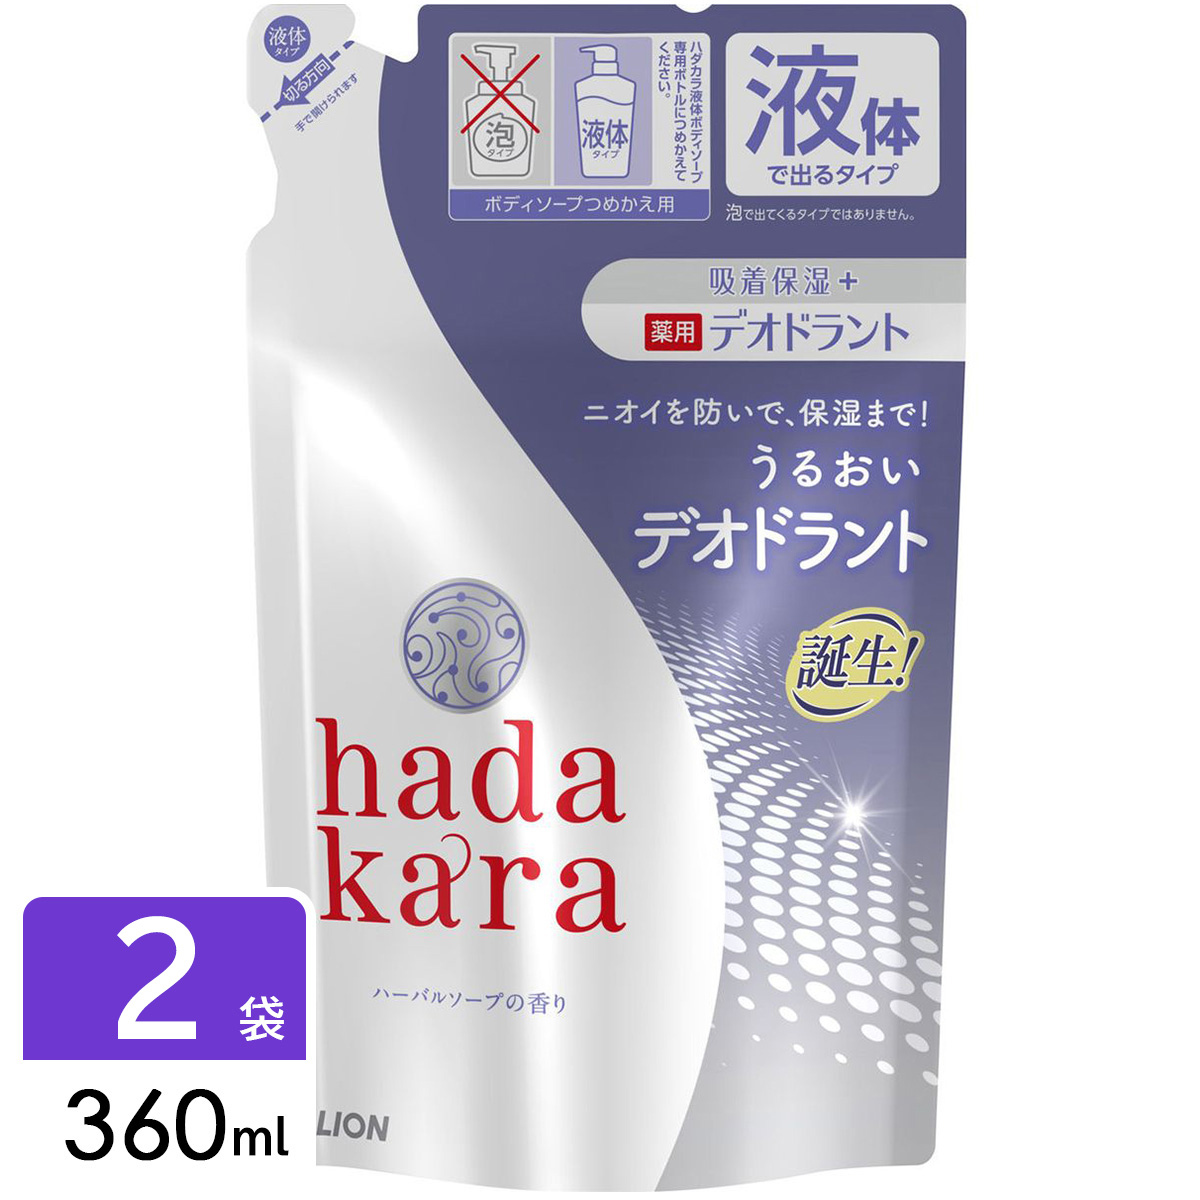 hadakara ハダカラ 薬用デオドラントボディソープ 詰め替え 360ml 2袋